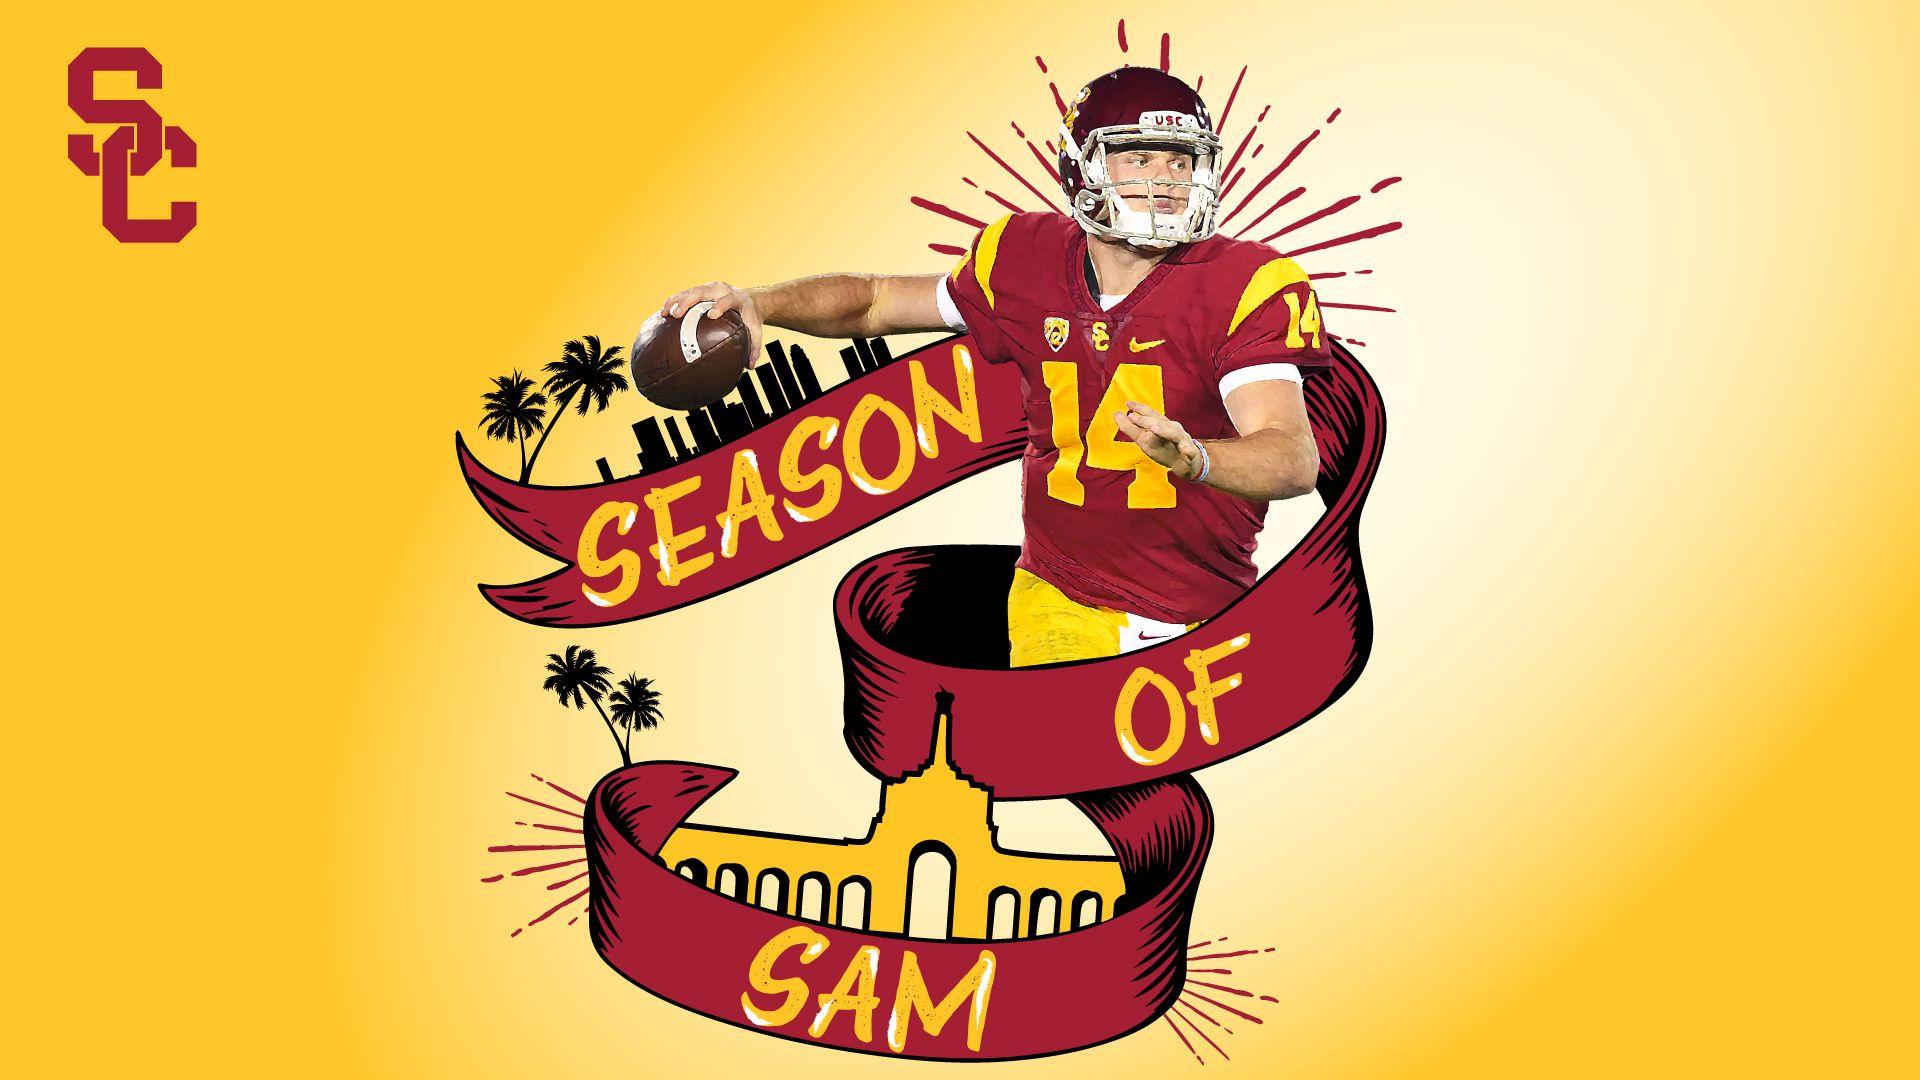 Season of Sam